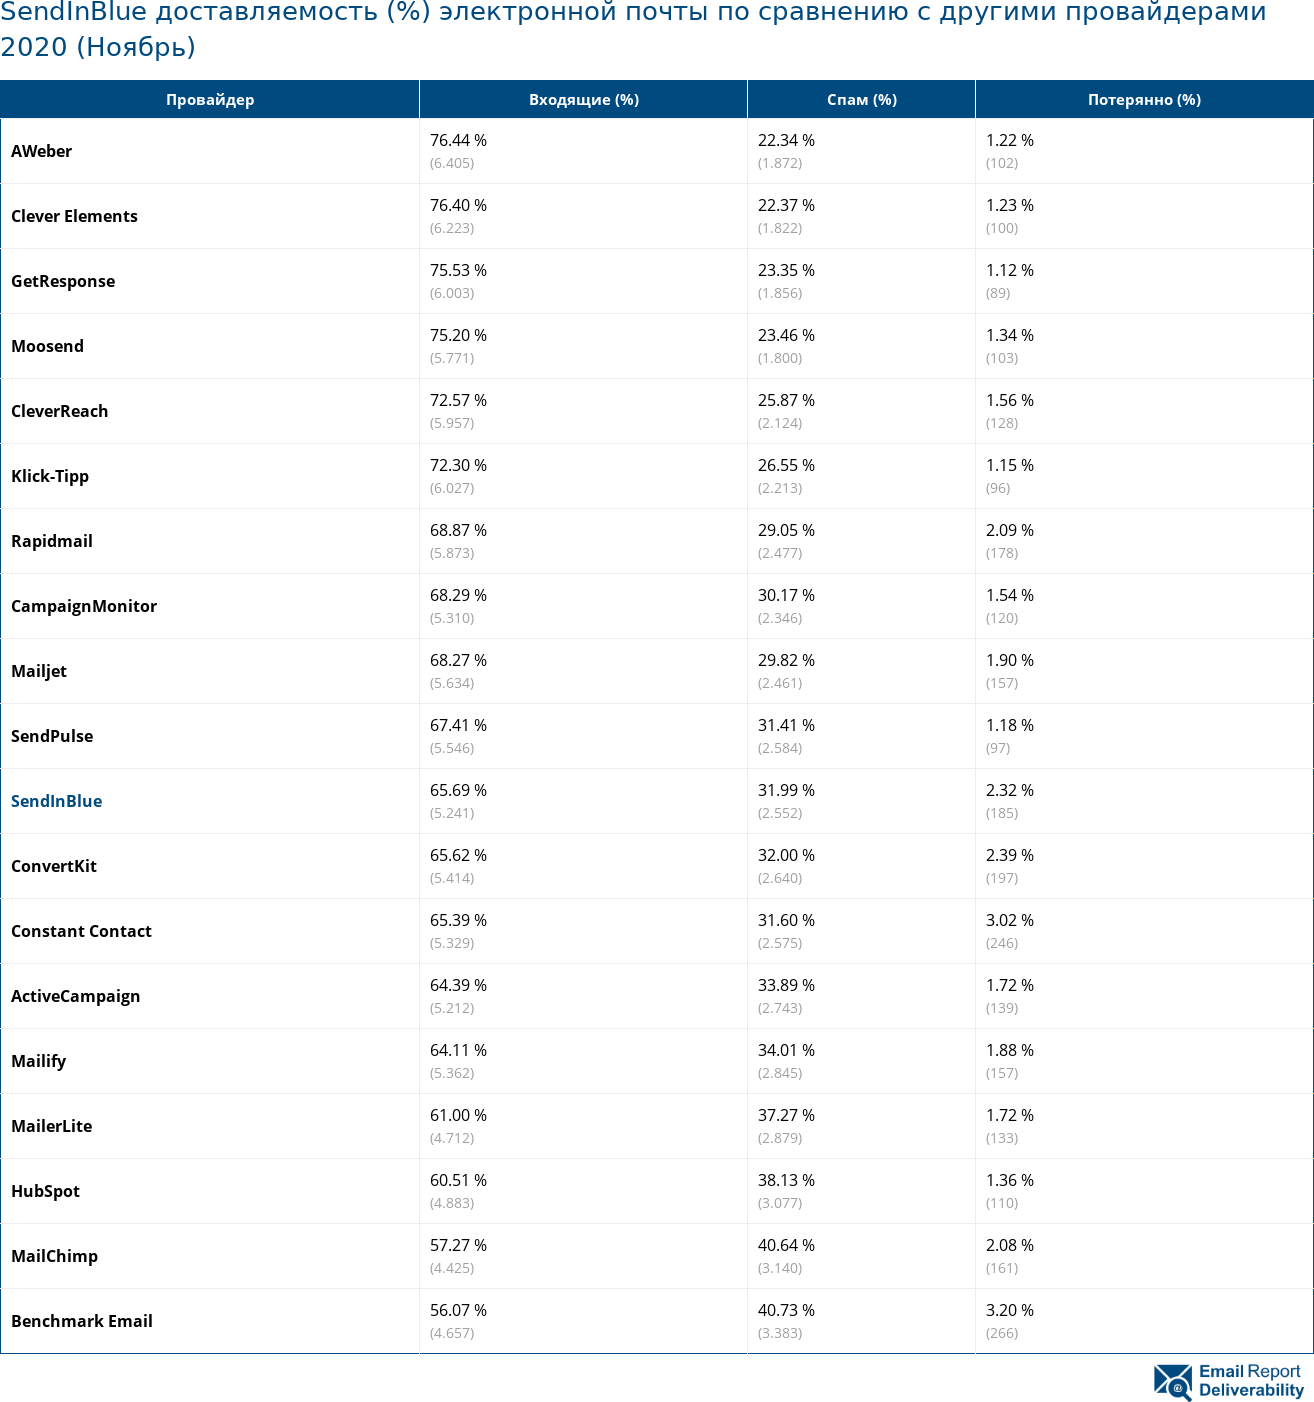 SendInBlue доставляемость (%) электронной почты по сравнению с другими провайдерами 2020 (Ноябрь)